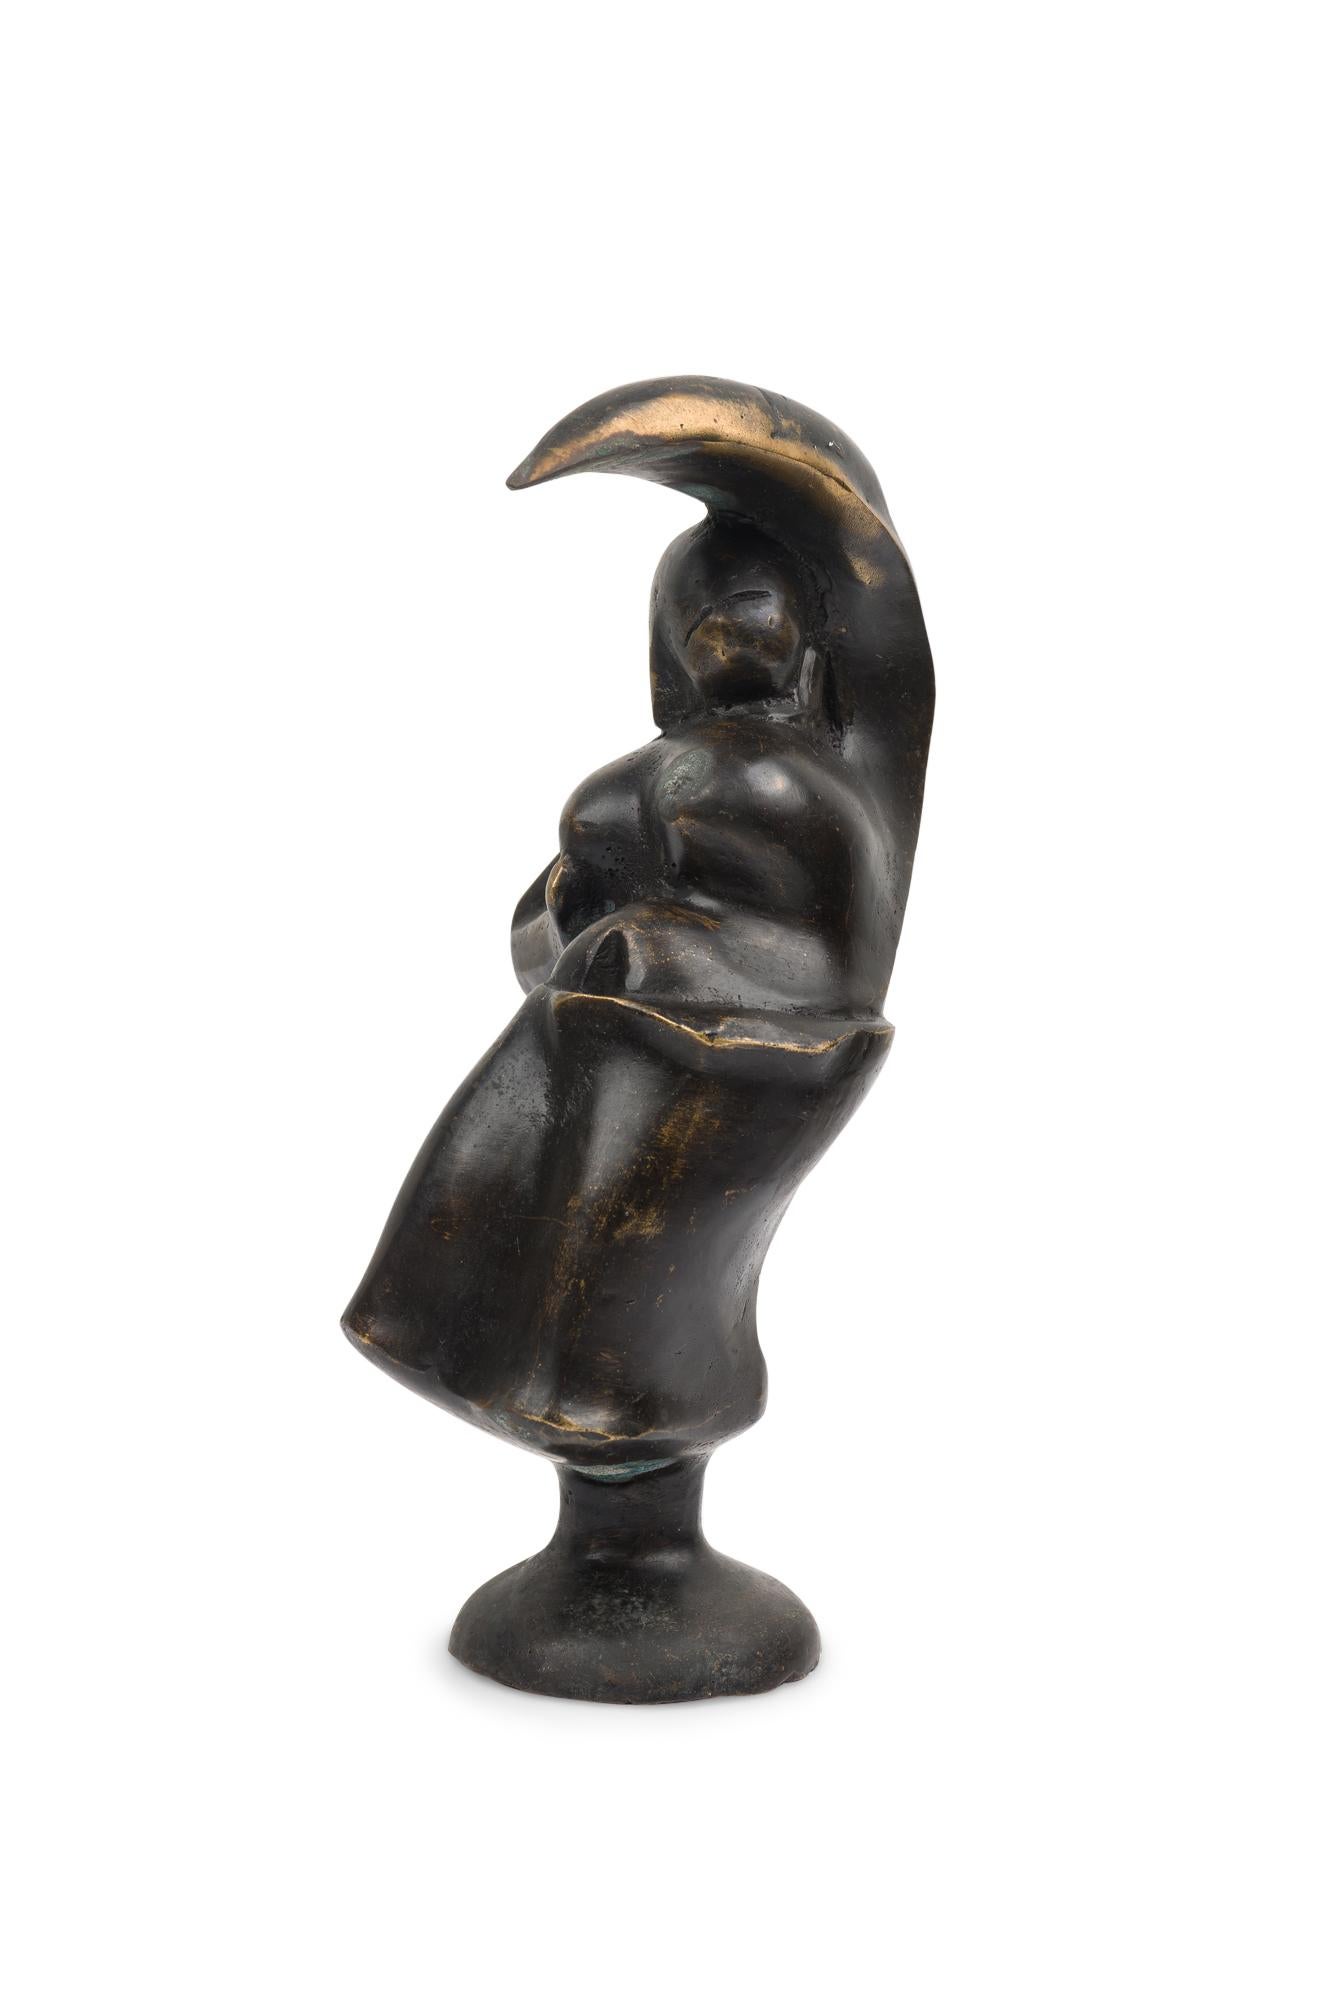 Zeitgenössische, handgeschmiedete, brutalistisch inspirierte Bronzeskulptur, die eine weibliche Figur in Form einer Mondsichel darstellt und mit einer ebonisierten Patina versehen ist. (PREIS PRO STÜCK) (